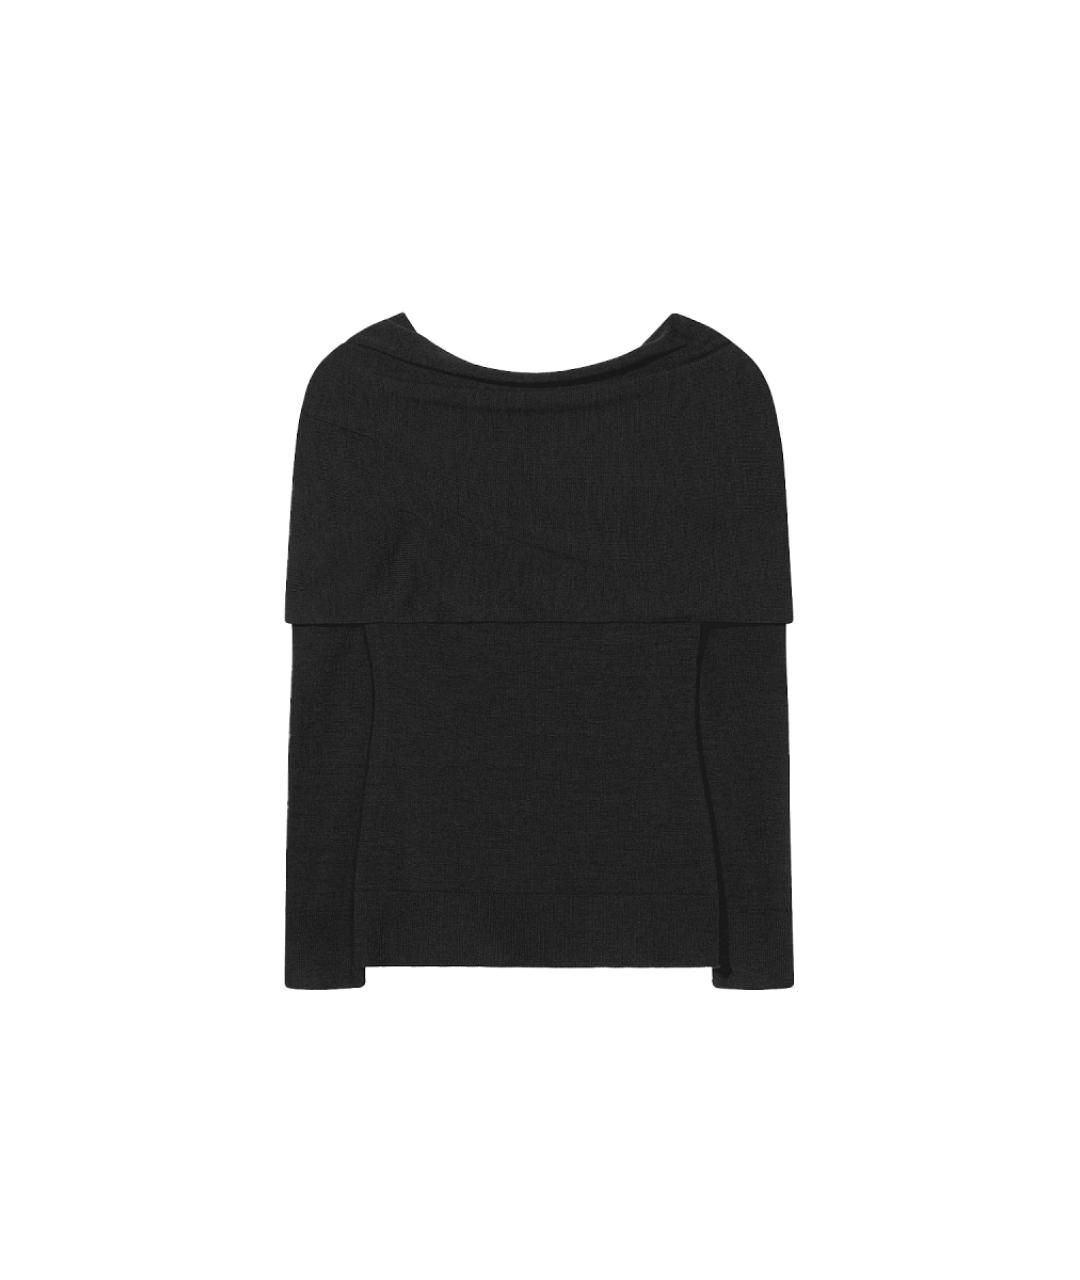 CO Черный шерстяной джемпер / свитер, фото 1